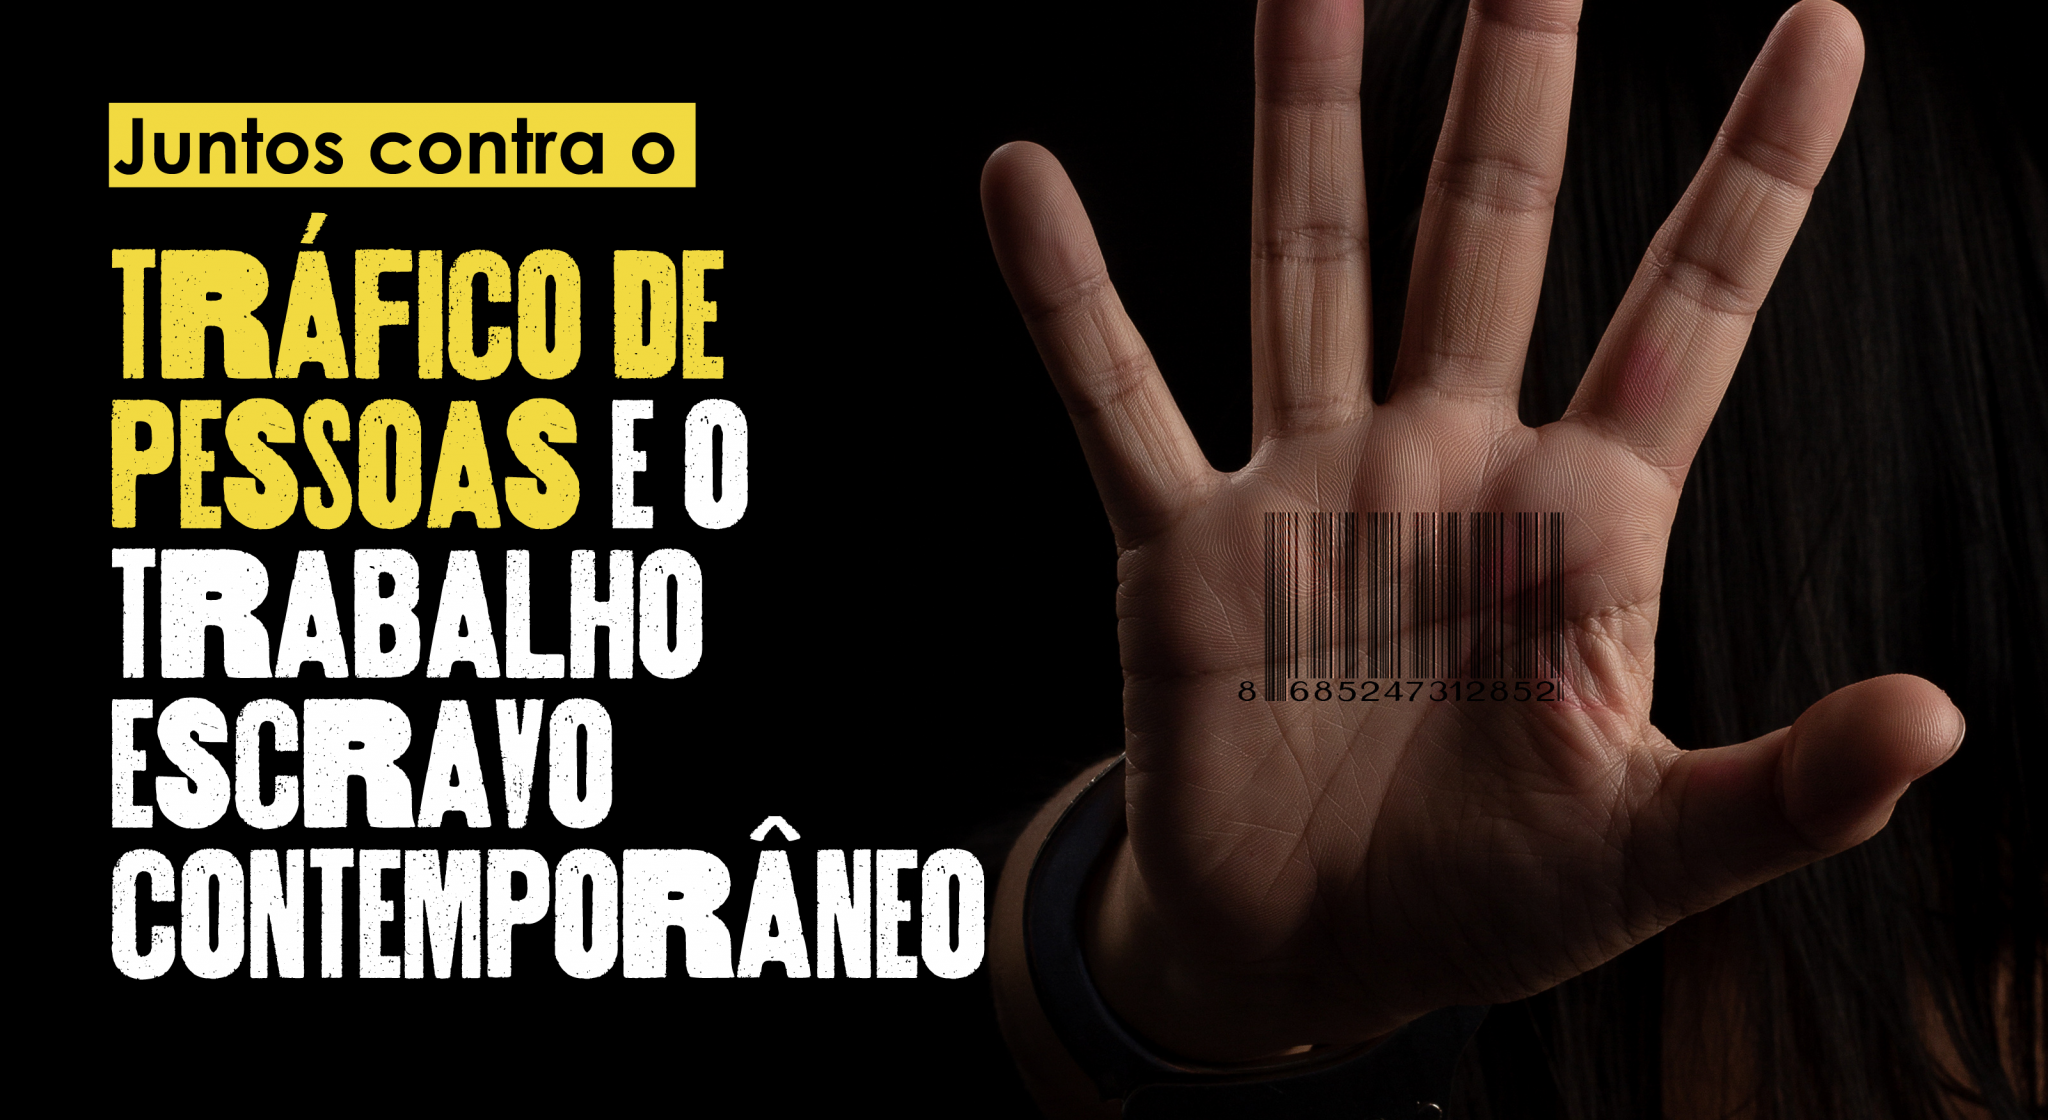 Foto de uma mão com um código de barras: Juntos contra o tráfico de pessoas e o trabalho escravo contemporâneo.